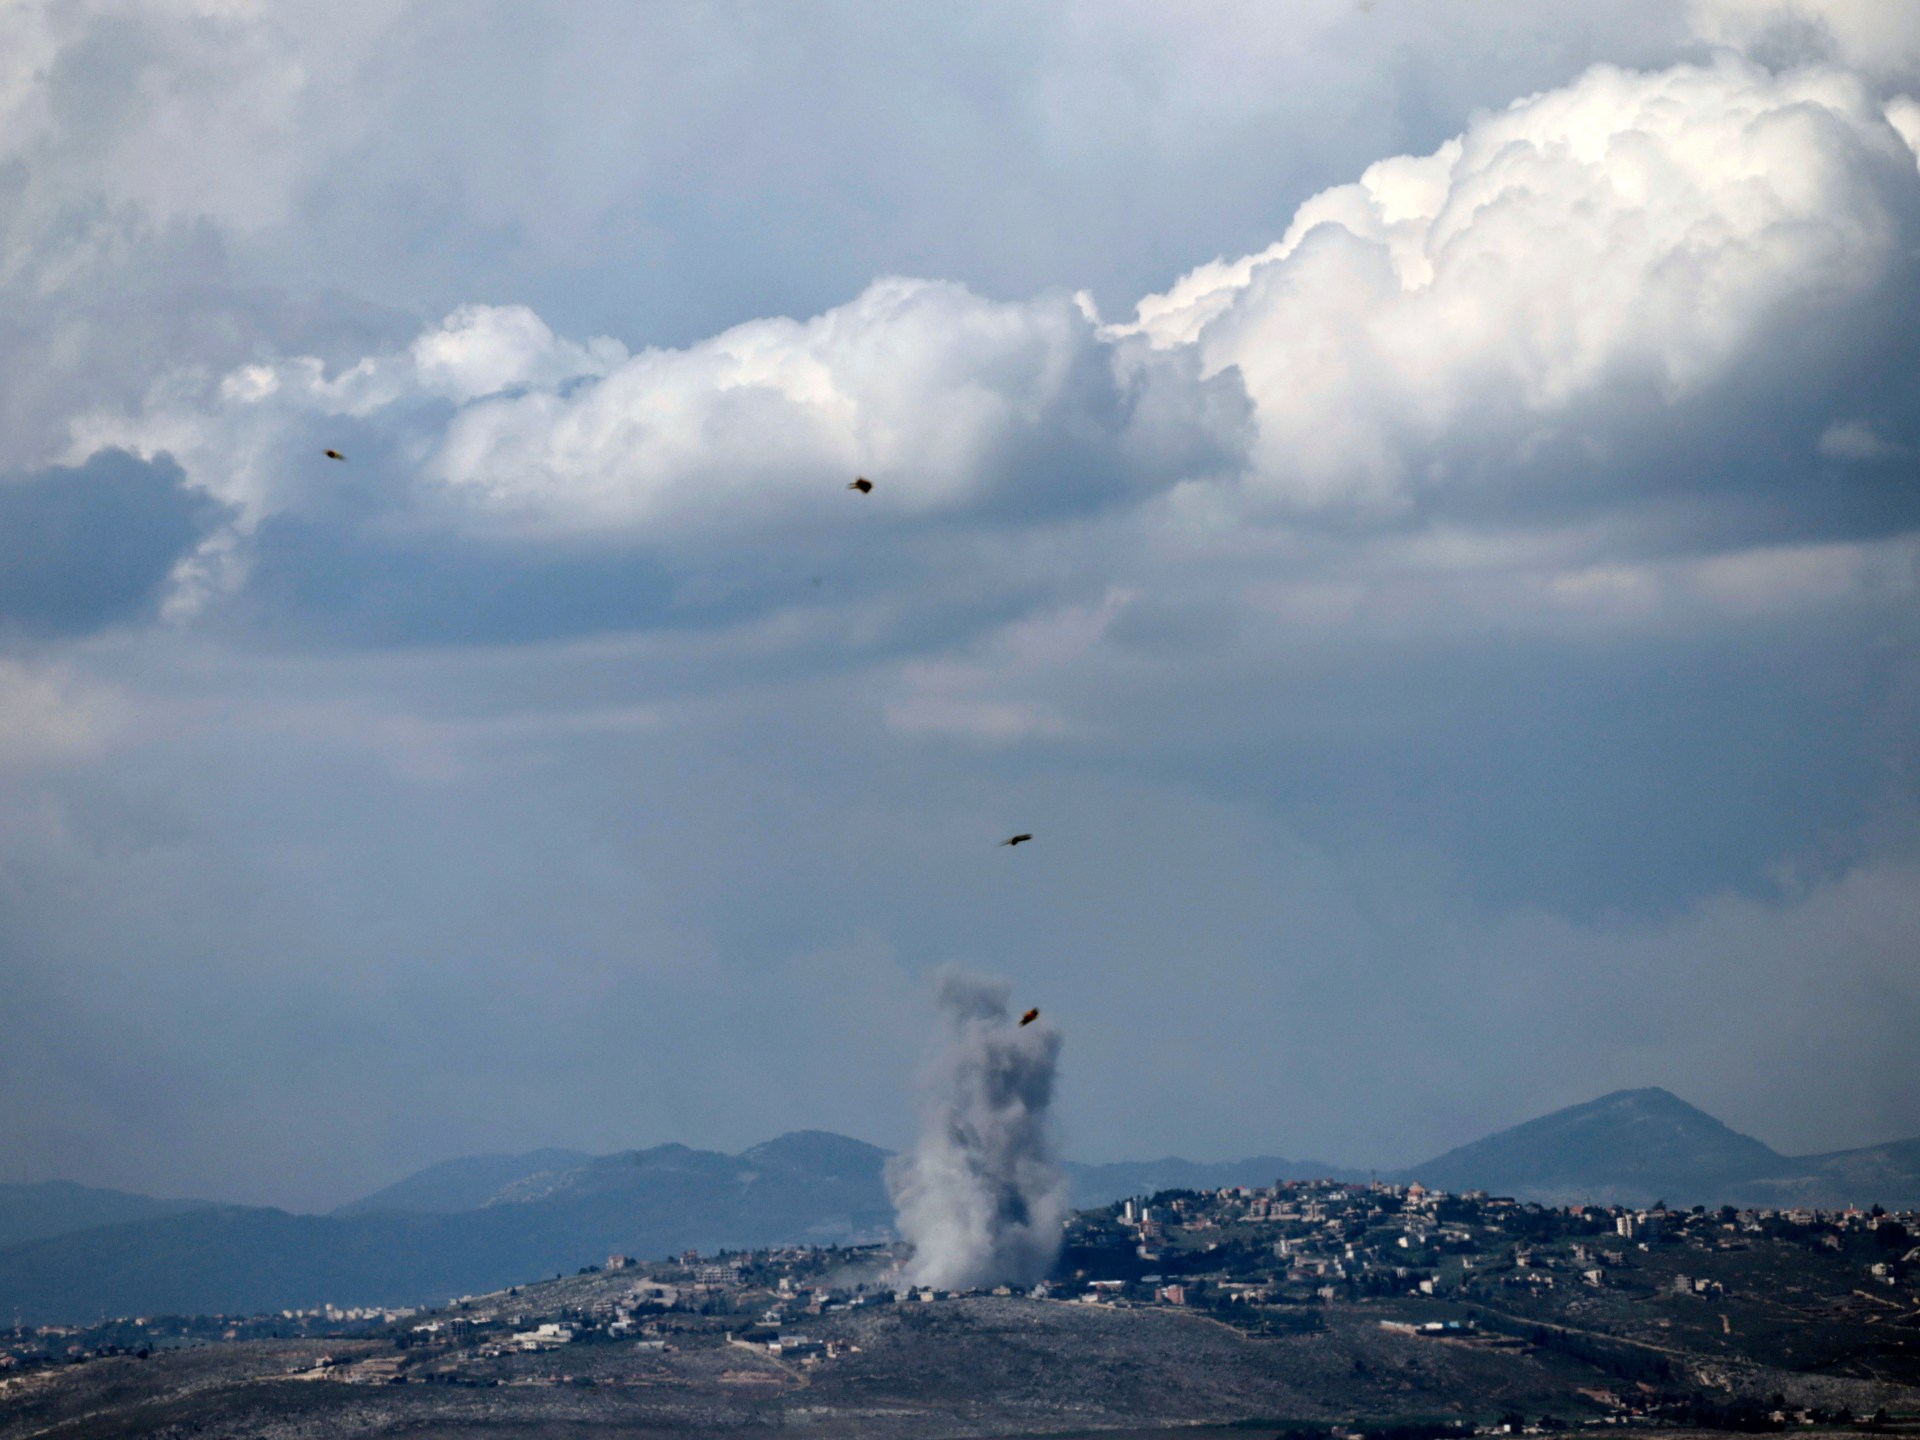 레바논 헤즈볼라, 이스라엘 기지에 미사일 수십 발 발사  이스라엘의 가자지구 전쟁 소식